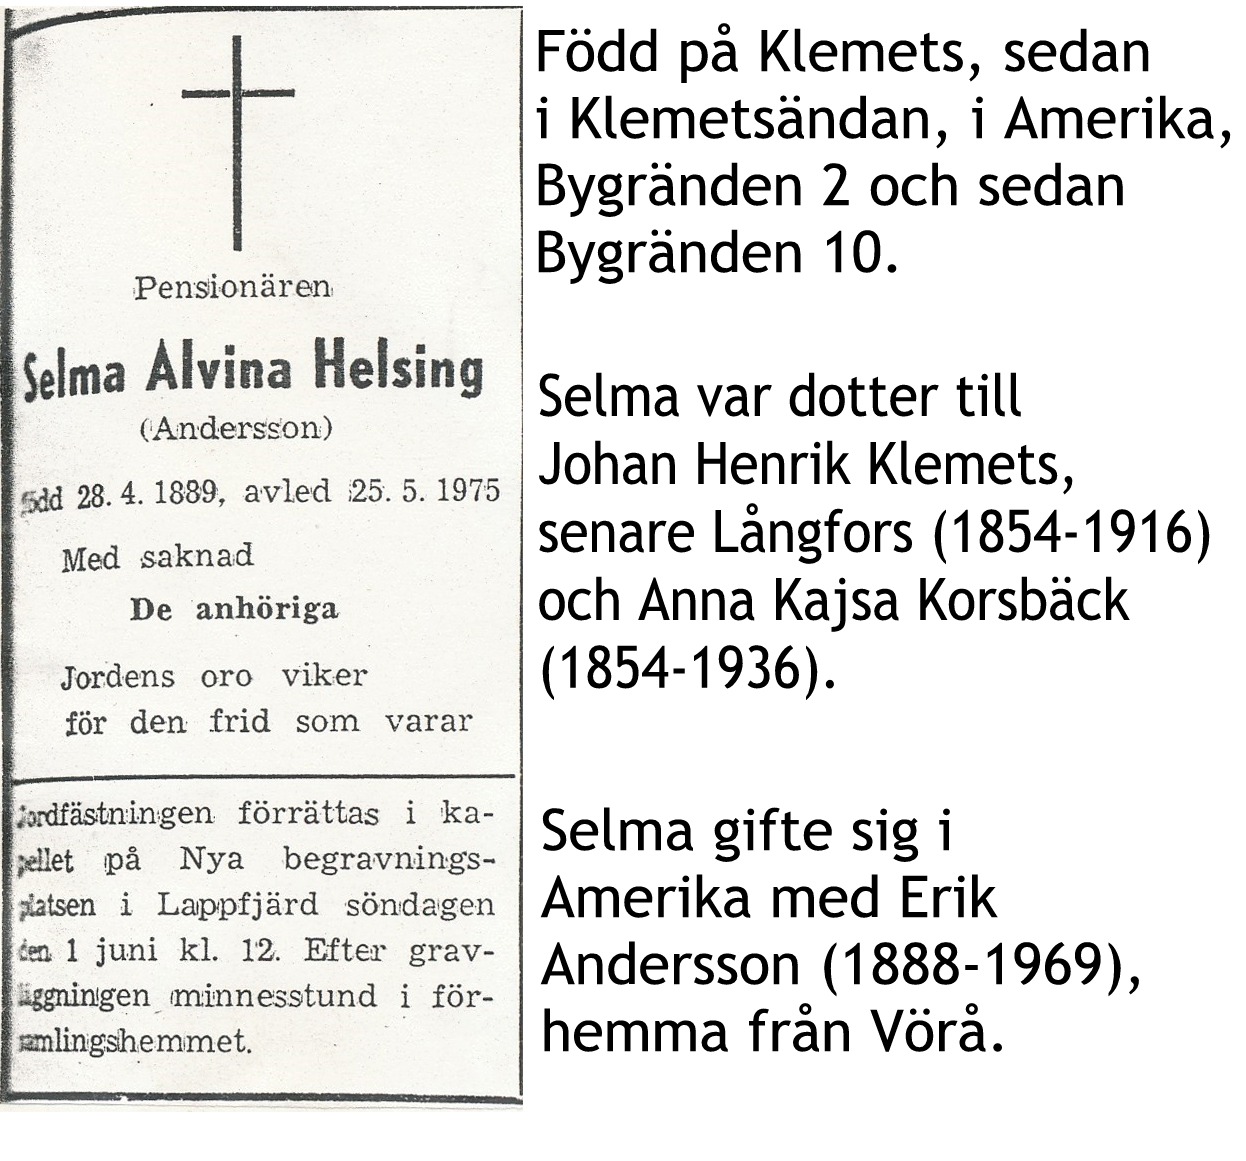 Andersson Selma Helsing